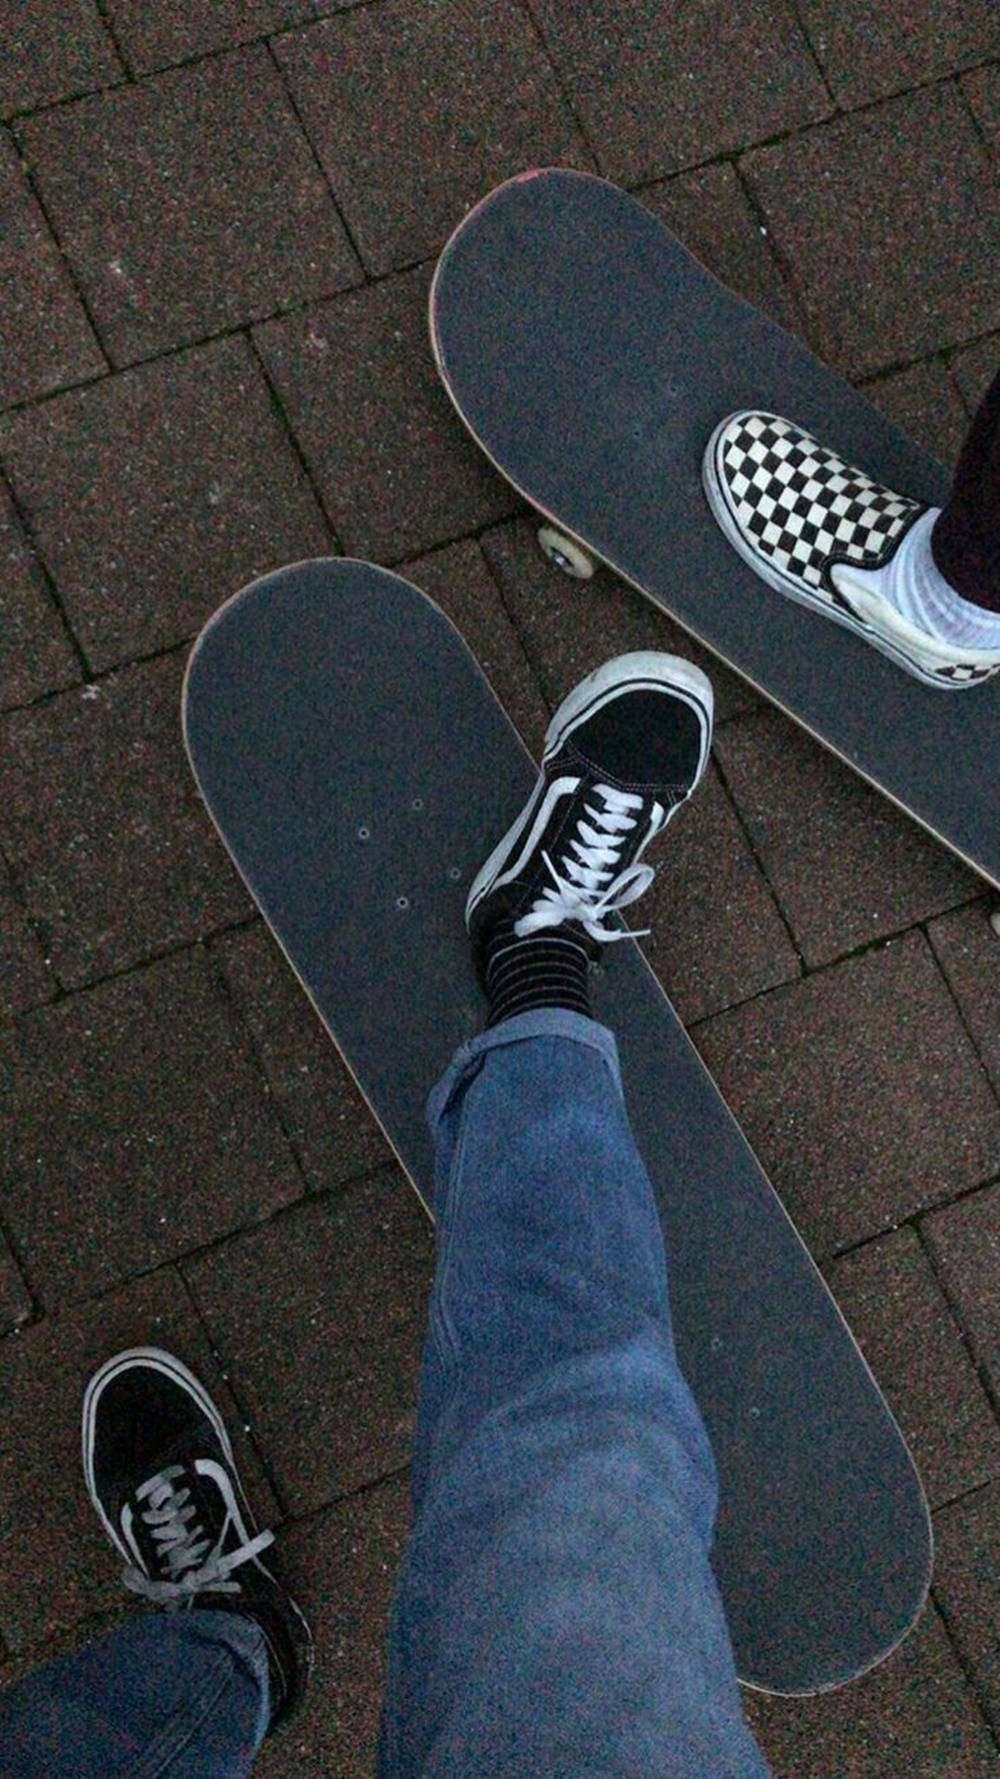 Vans Black And White Skateboard Shoes Skater Aesthetic Wallpaper